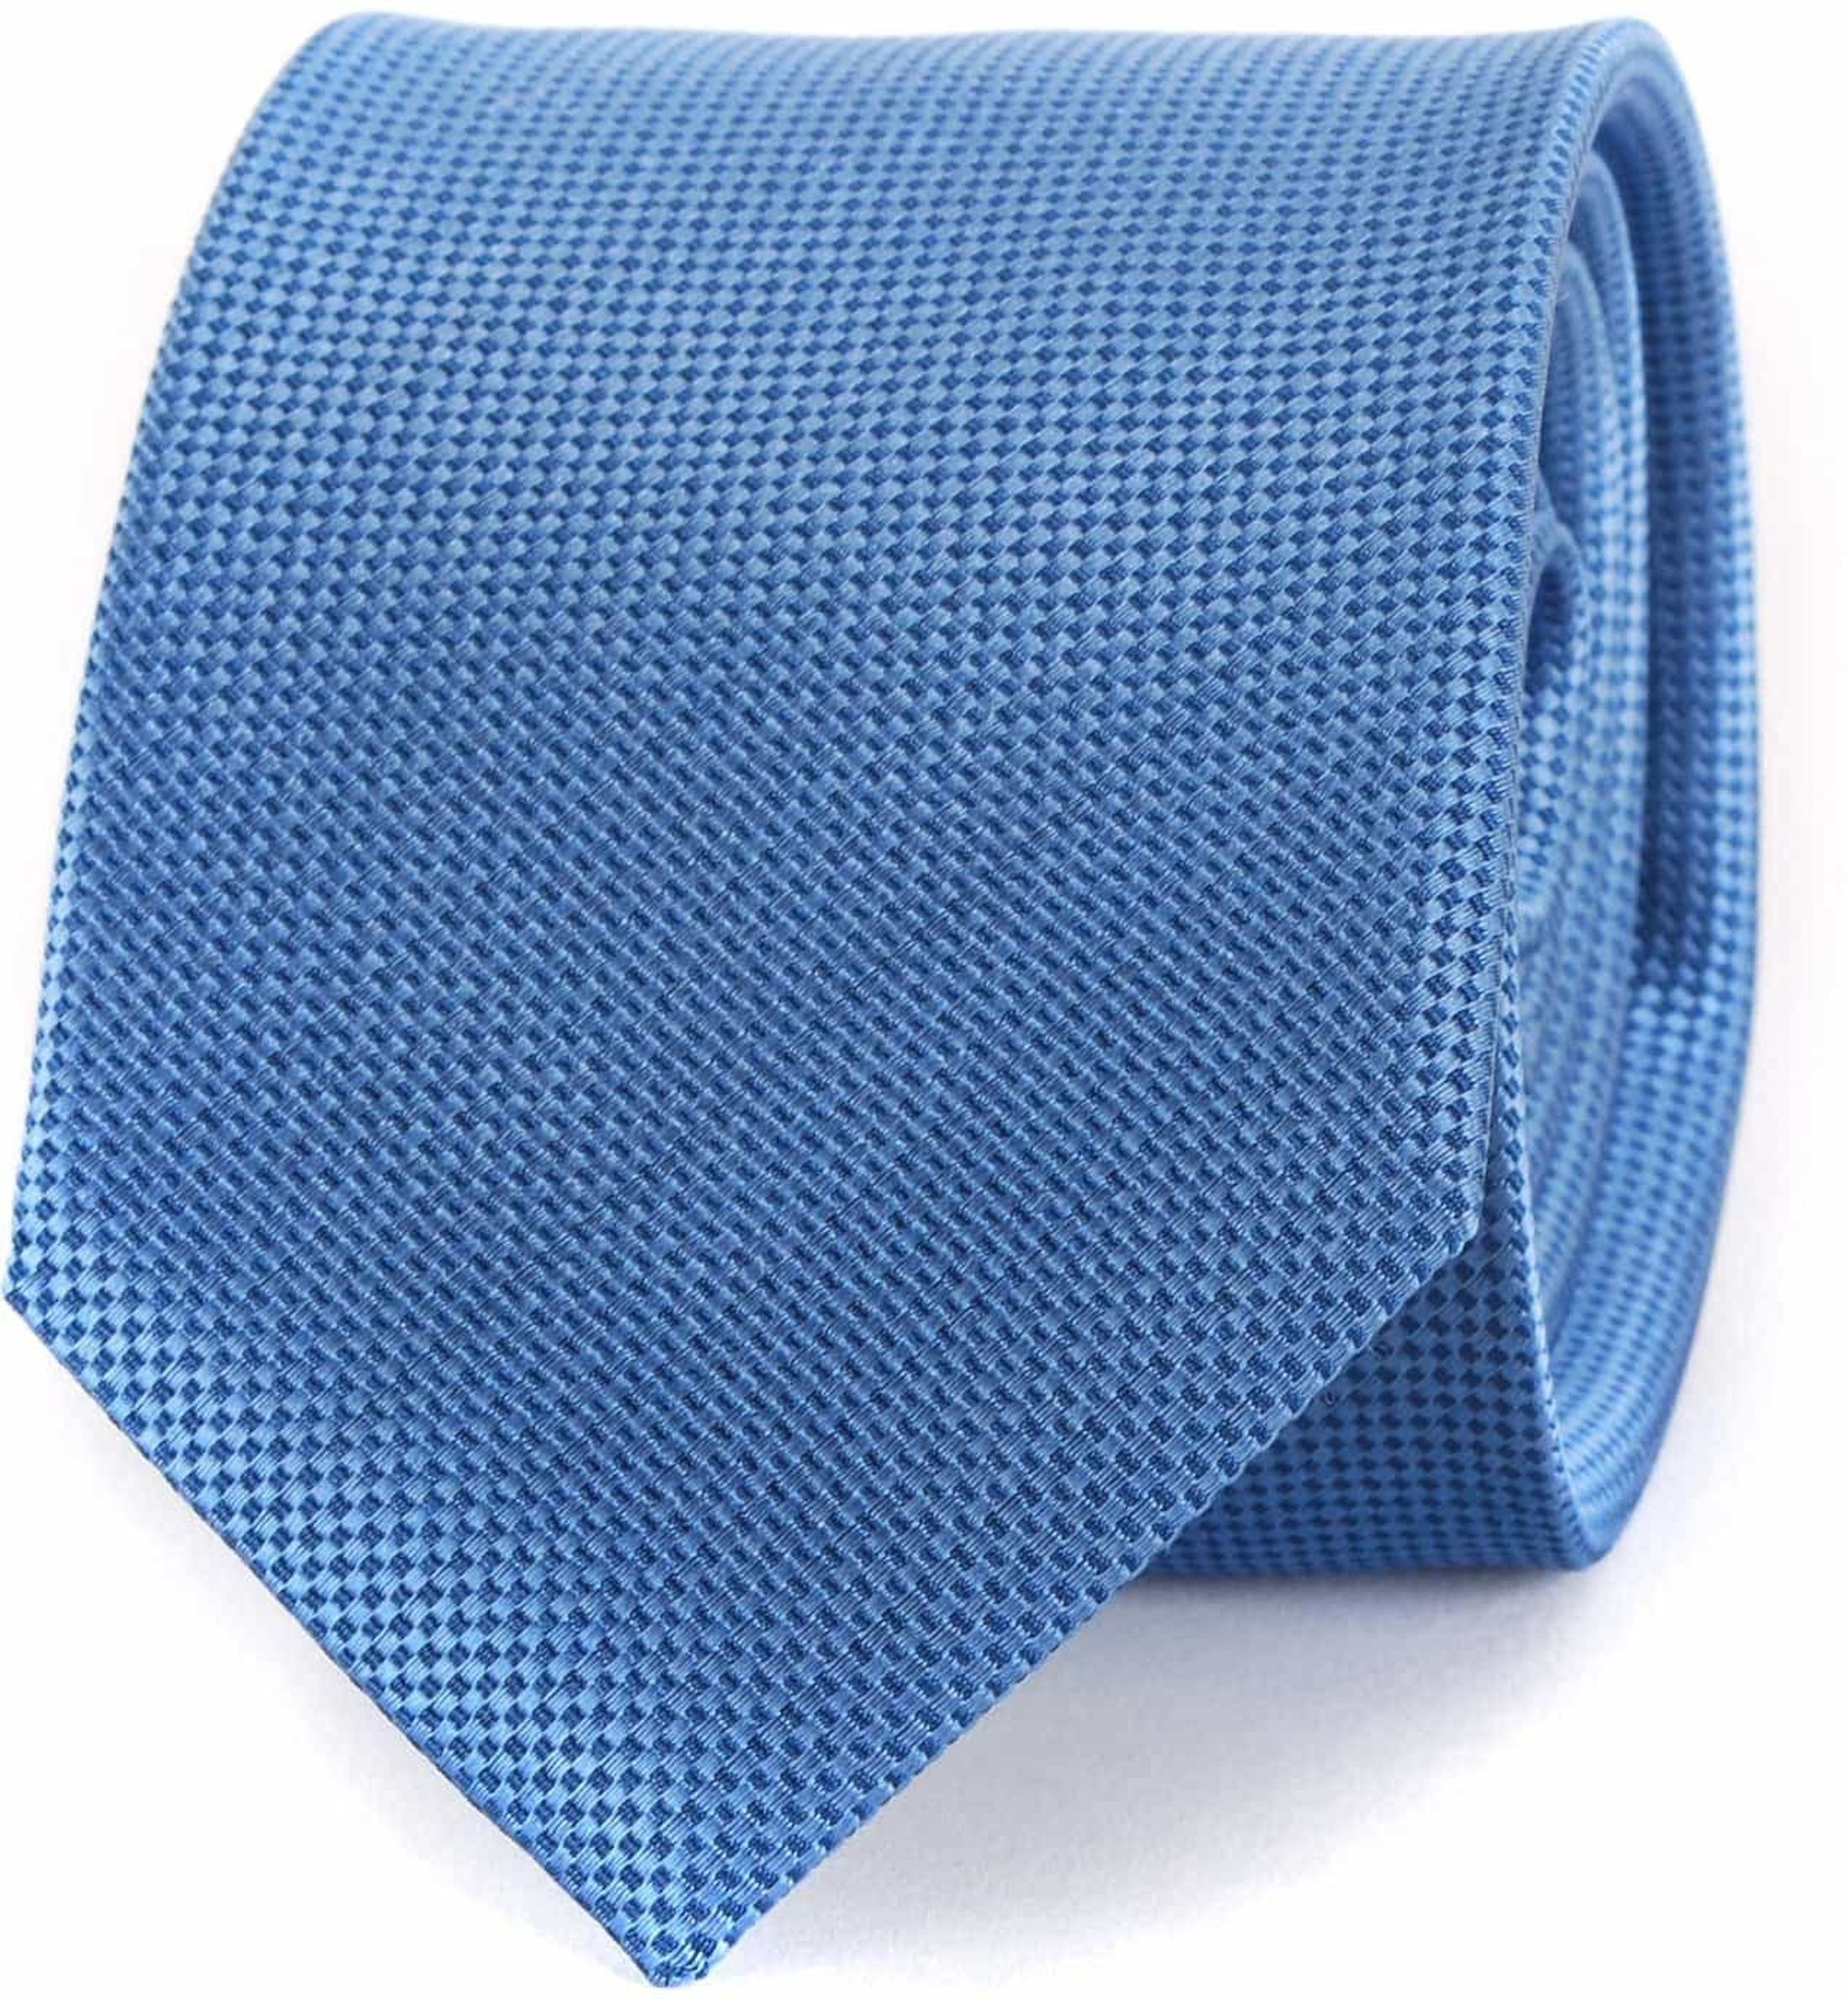 Cravate bleue 04A Bleu